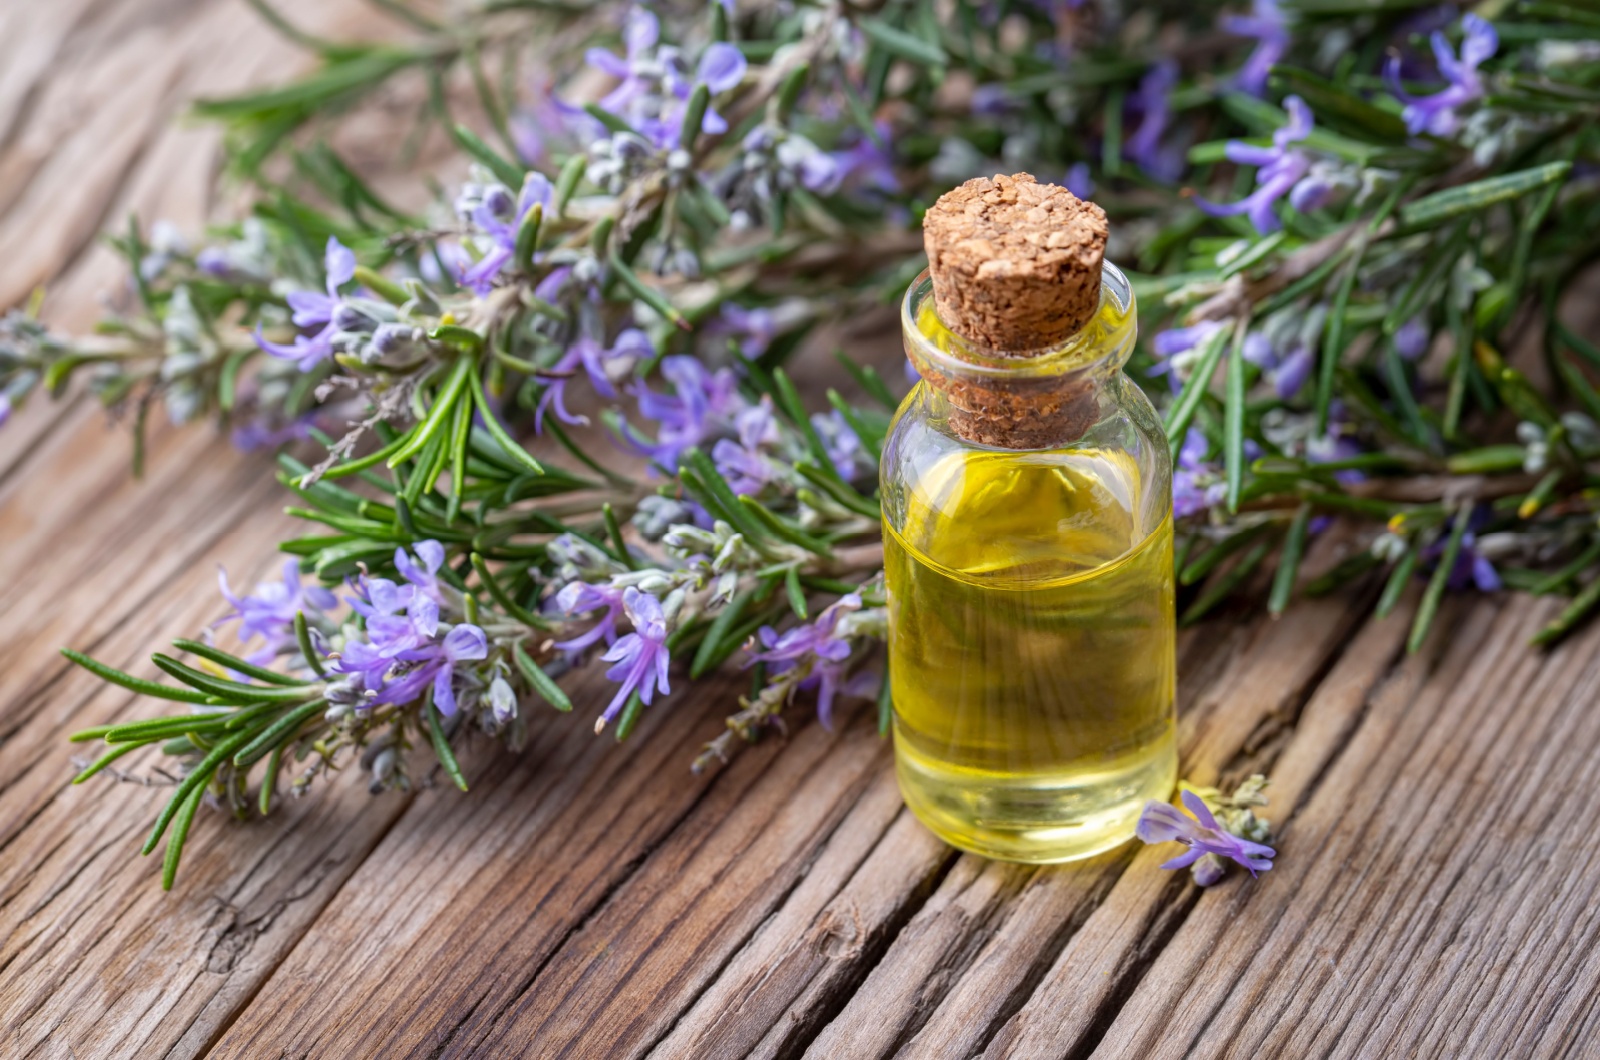 Rosemary herbal essential oil